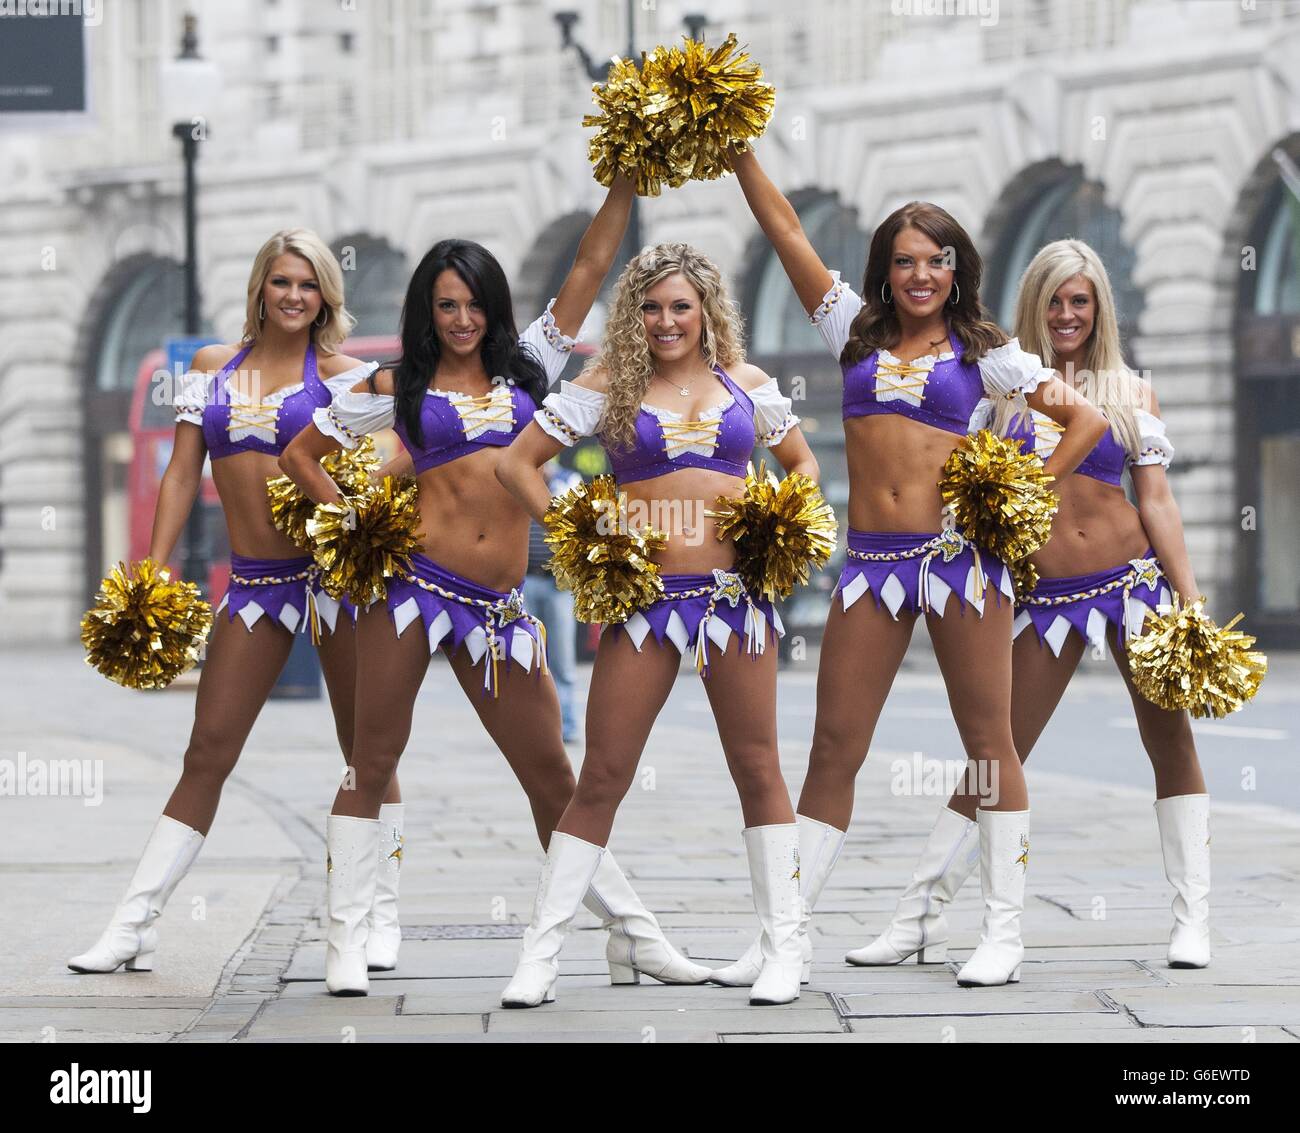 Minnesota Vikings cheerleaders on Regents Street Stock Photo - Alamy